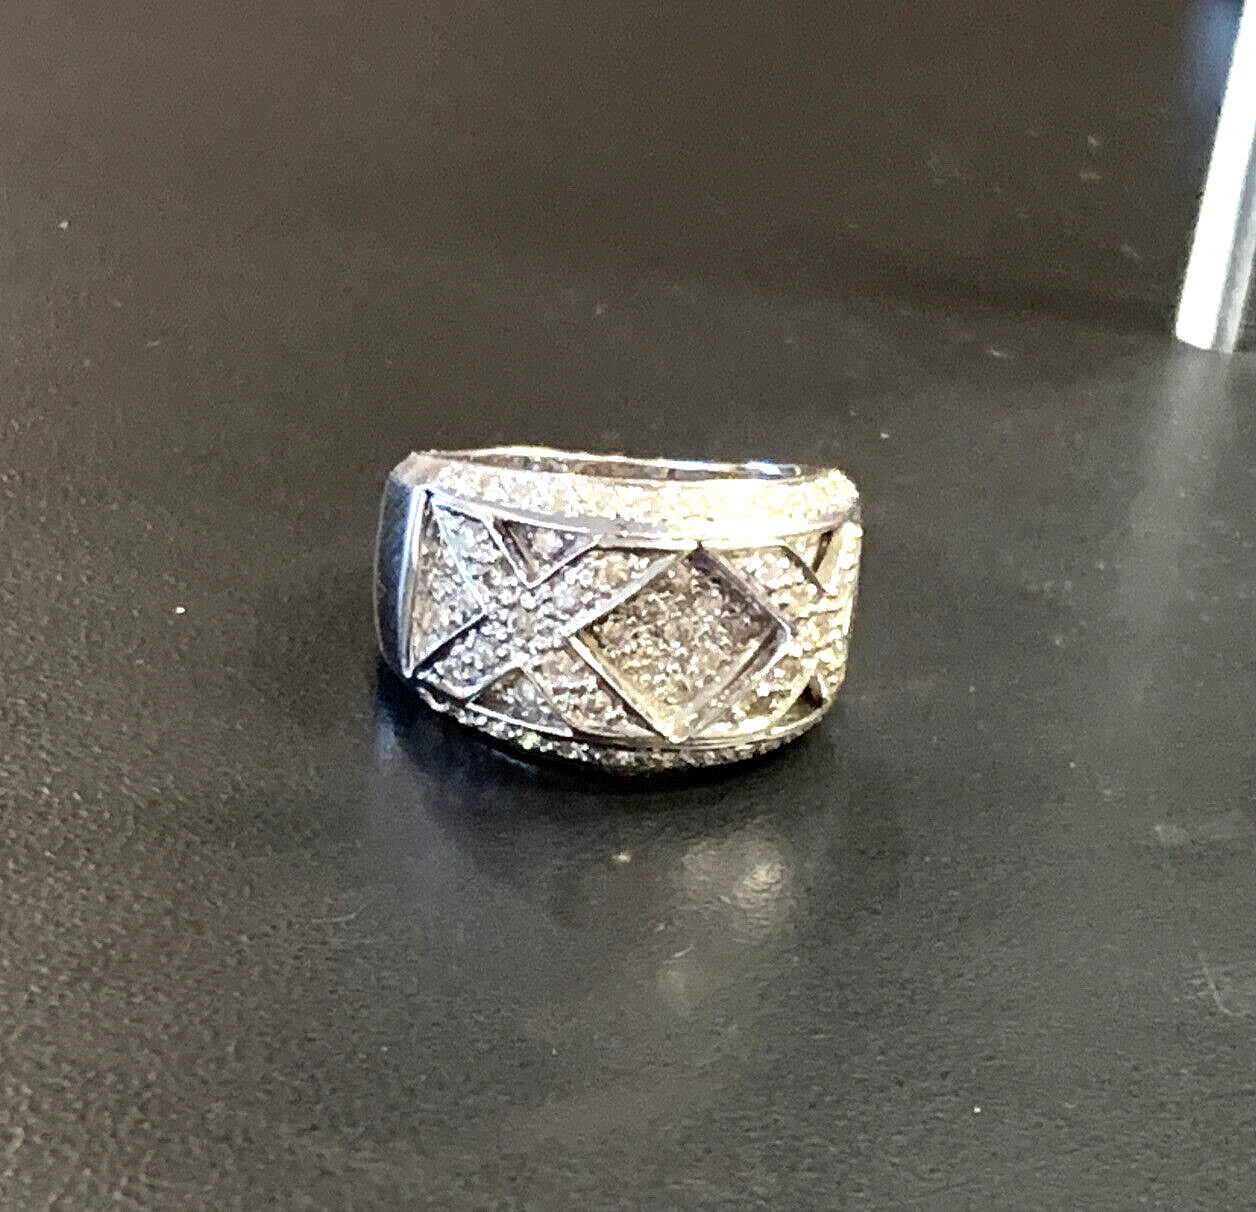 18k White Gold XX Diamond Ring - Size 7.75 - .65ctw